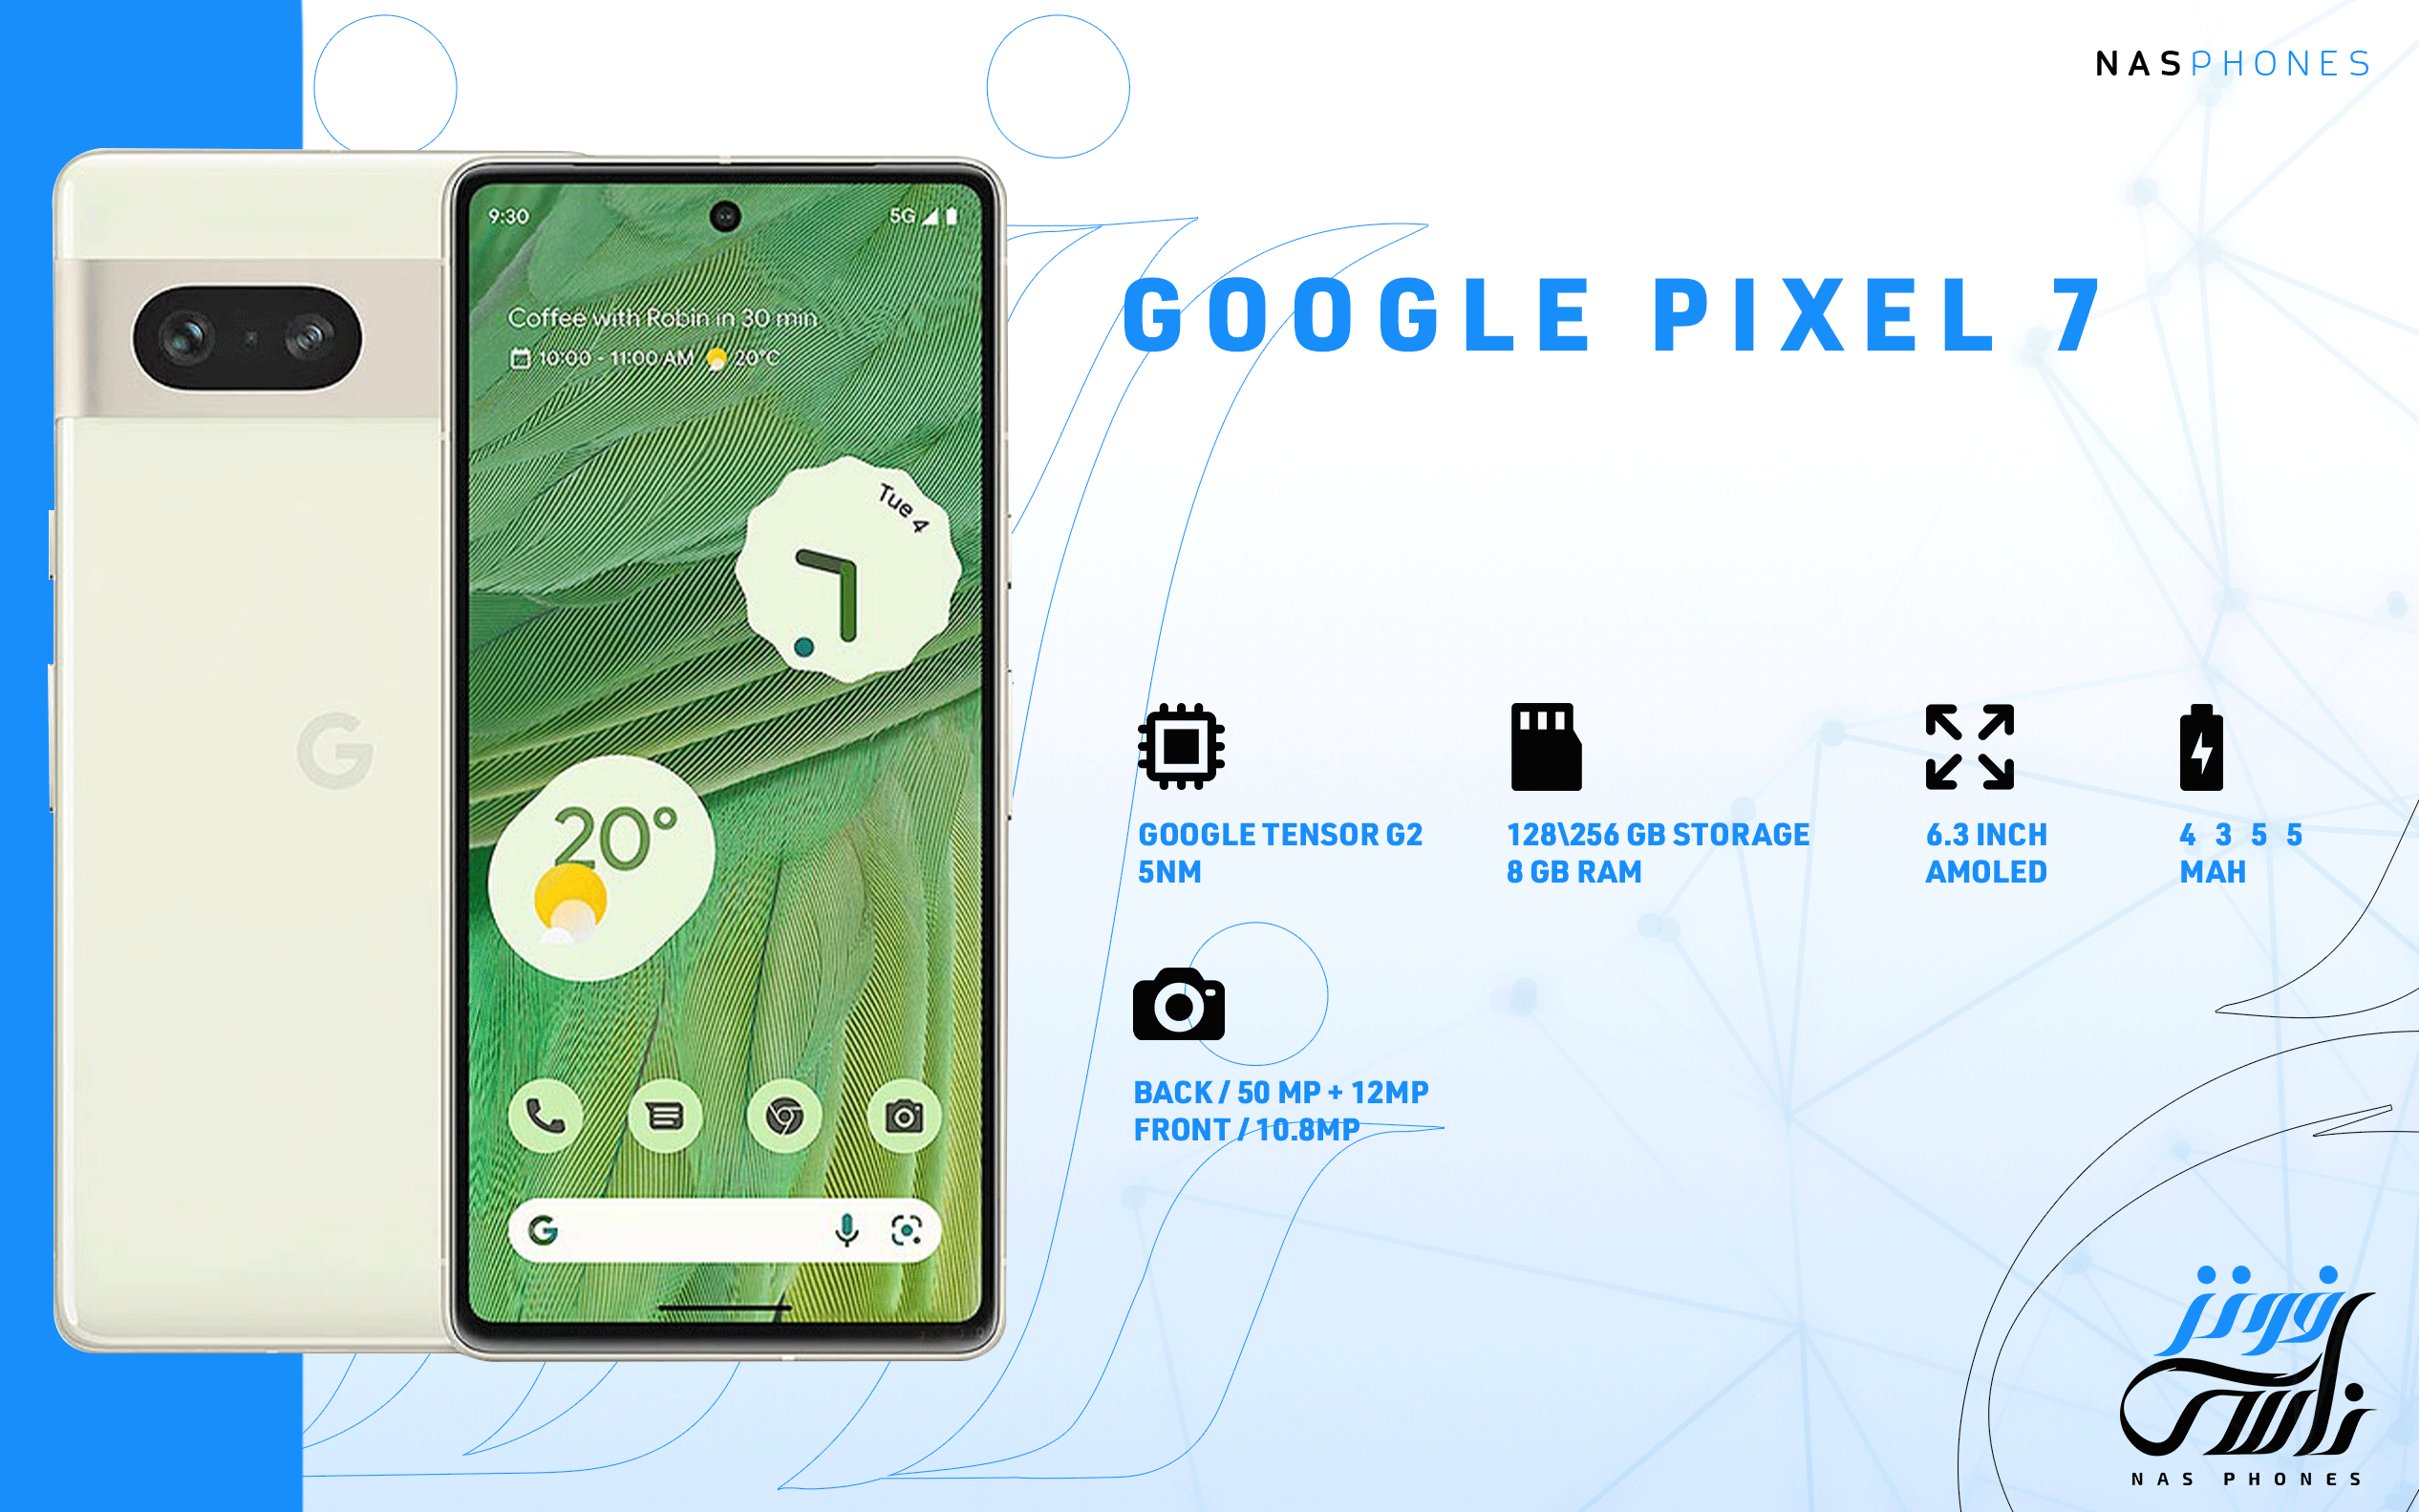 سعر ومواصفات هاتف Google Pixel 7